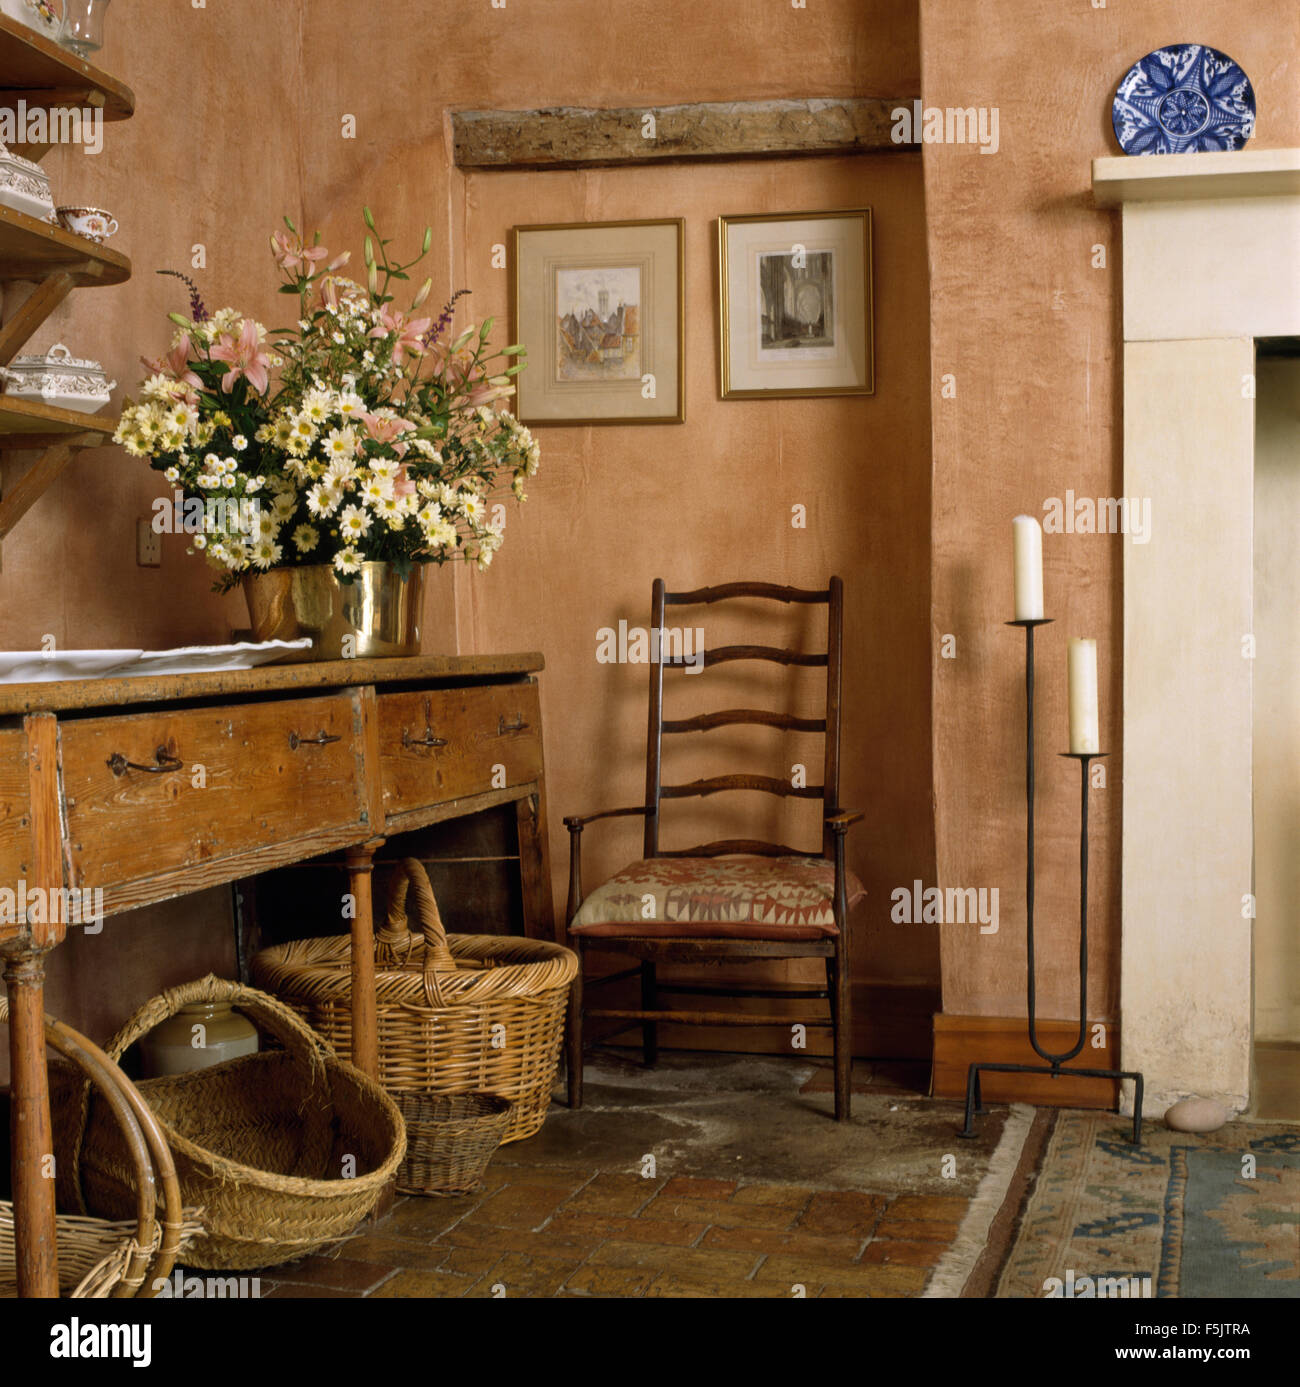 Körben unter alten Kiefern Tisch in Erdfarben Halle mit einem antiken  Leiter zurück Stuhl und Schmiedeeisen Leuchter Stockfotografie - Alamy